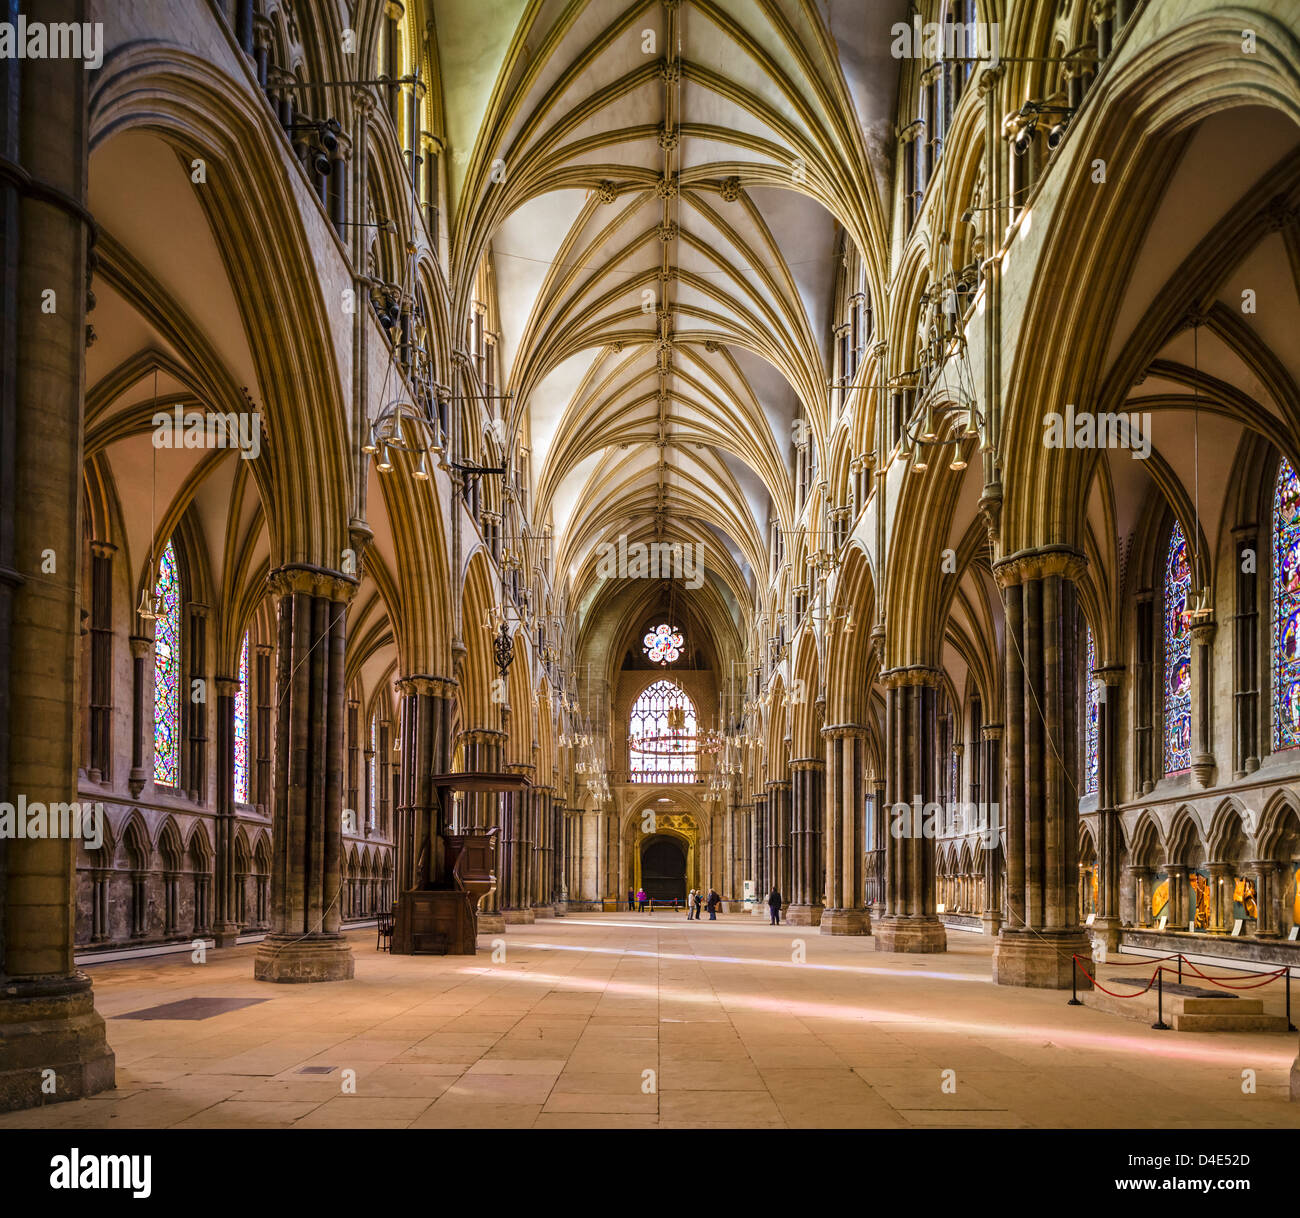 Nave central de la Catedral de Lincoln en el casco histórico de la ciudad de Lincoln, Lincolnshire, East Midlands, Reino Unido Foto de stock